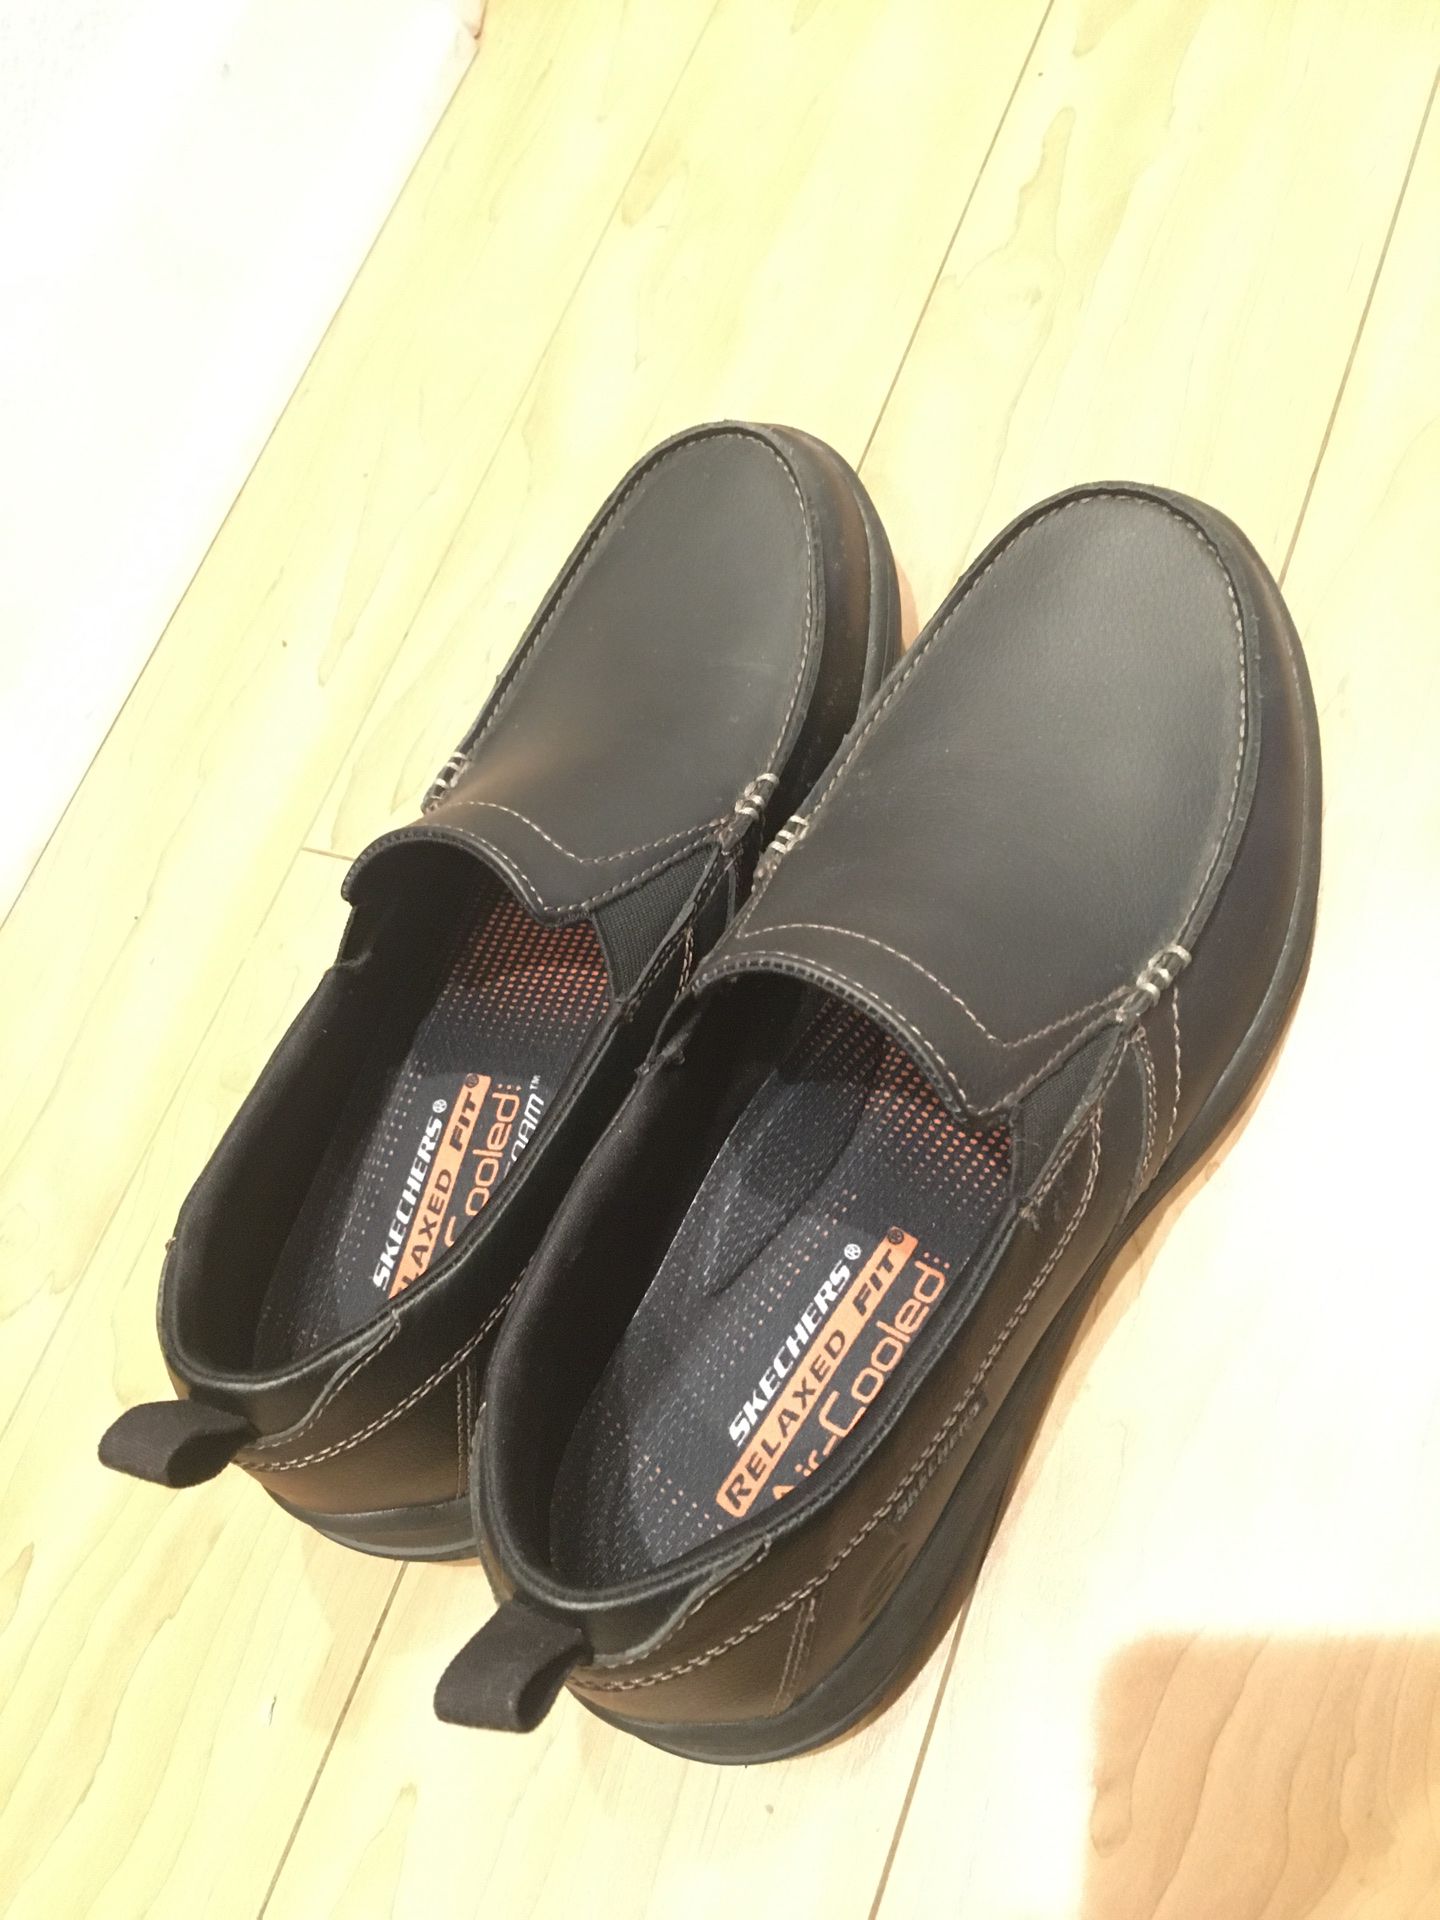 Slip on men’s black dress loafer shoes size 9